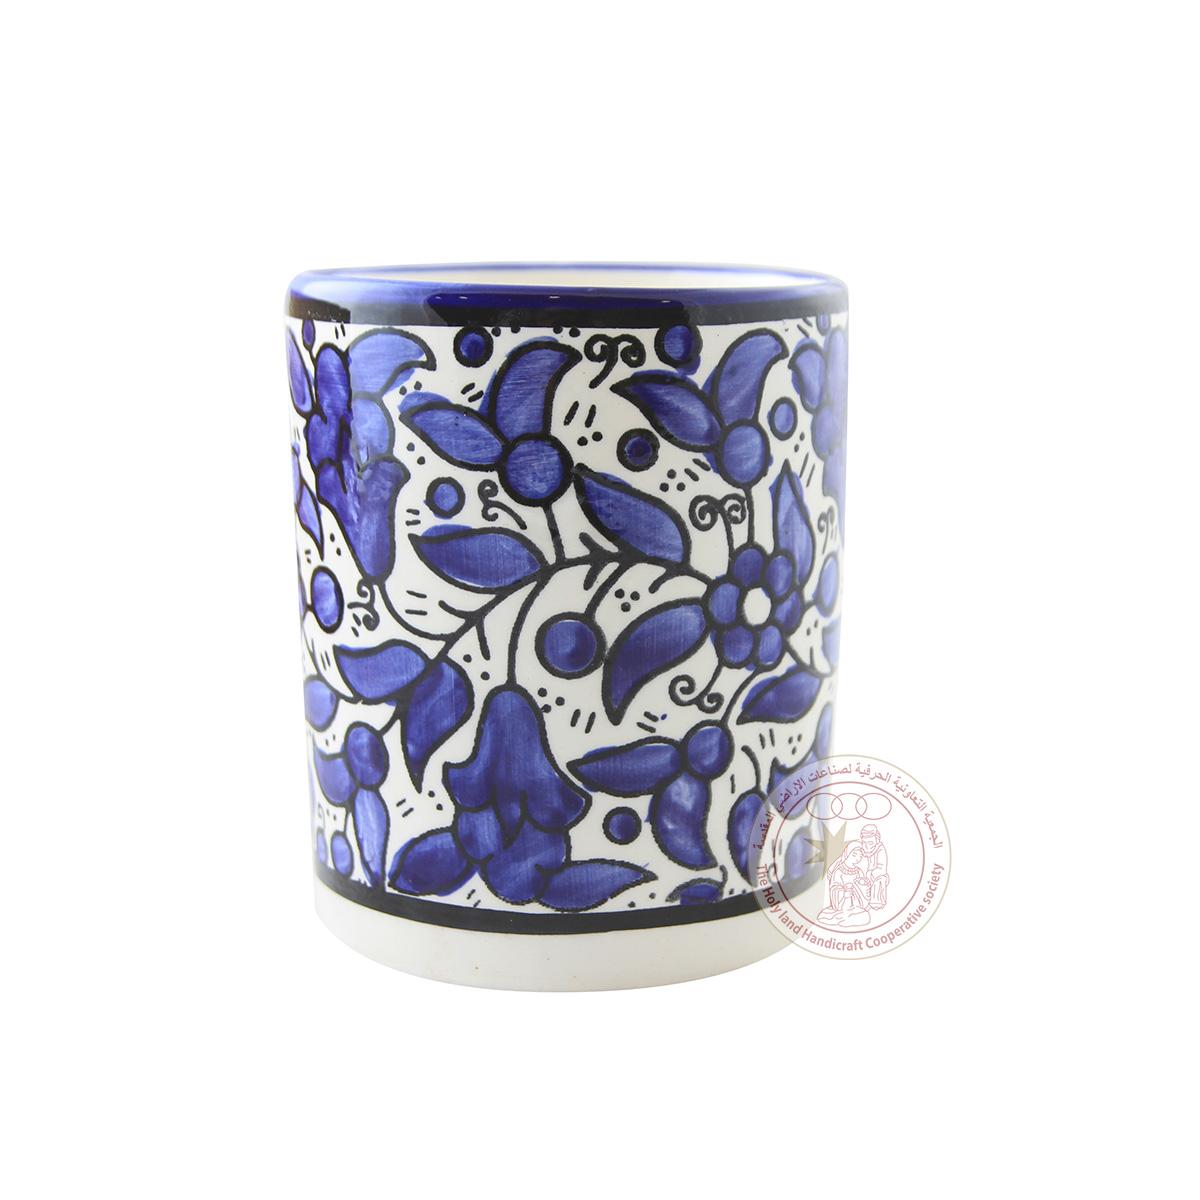 Blue Tulips' Mug Mug - 10 CM, Ceramic